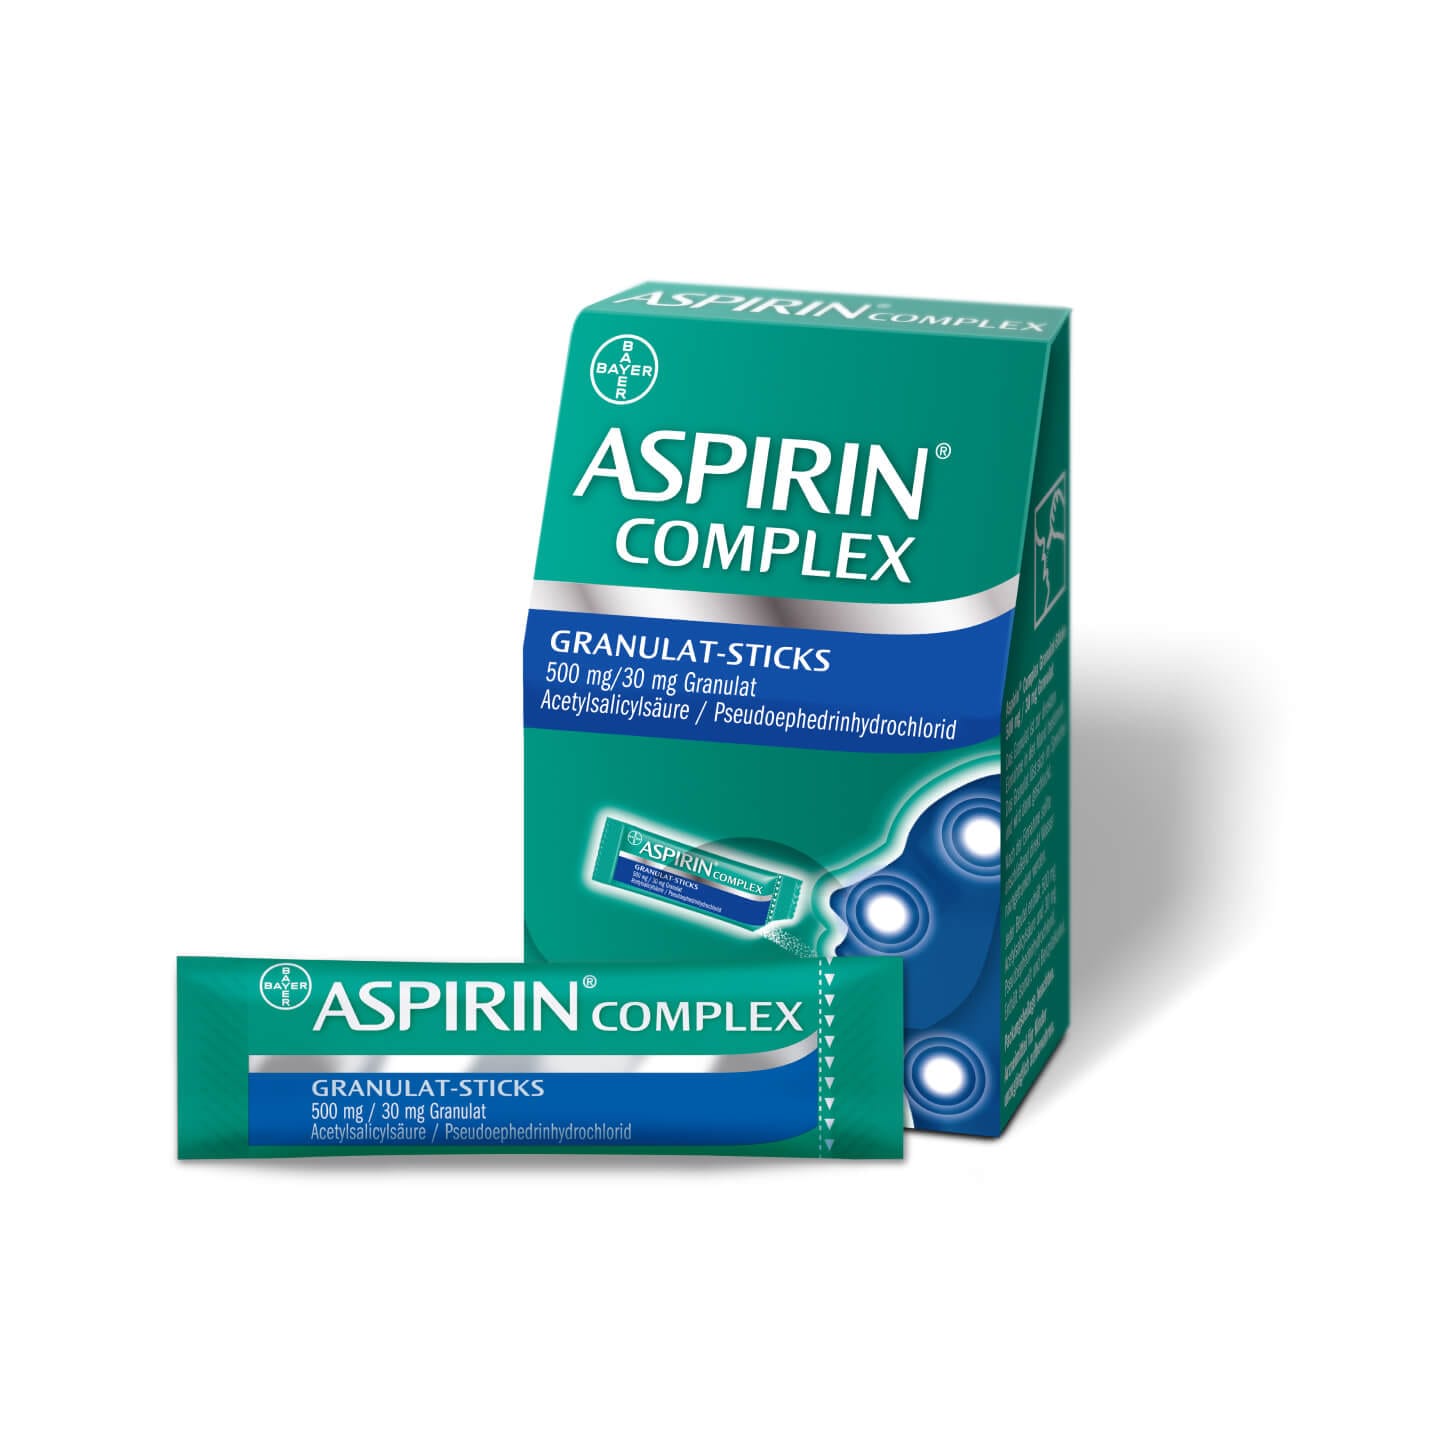 Aspirin® Complex Granulat-Sticks